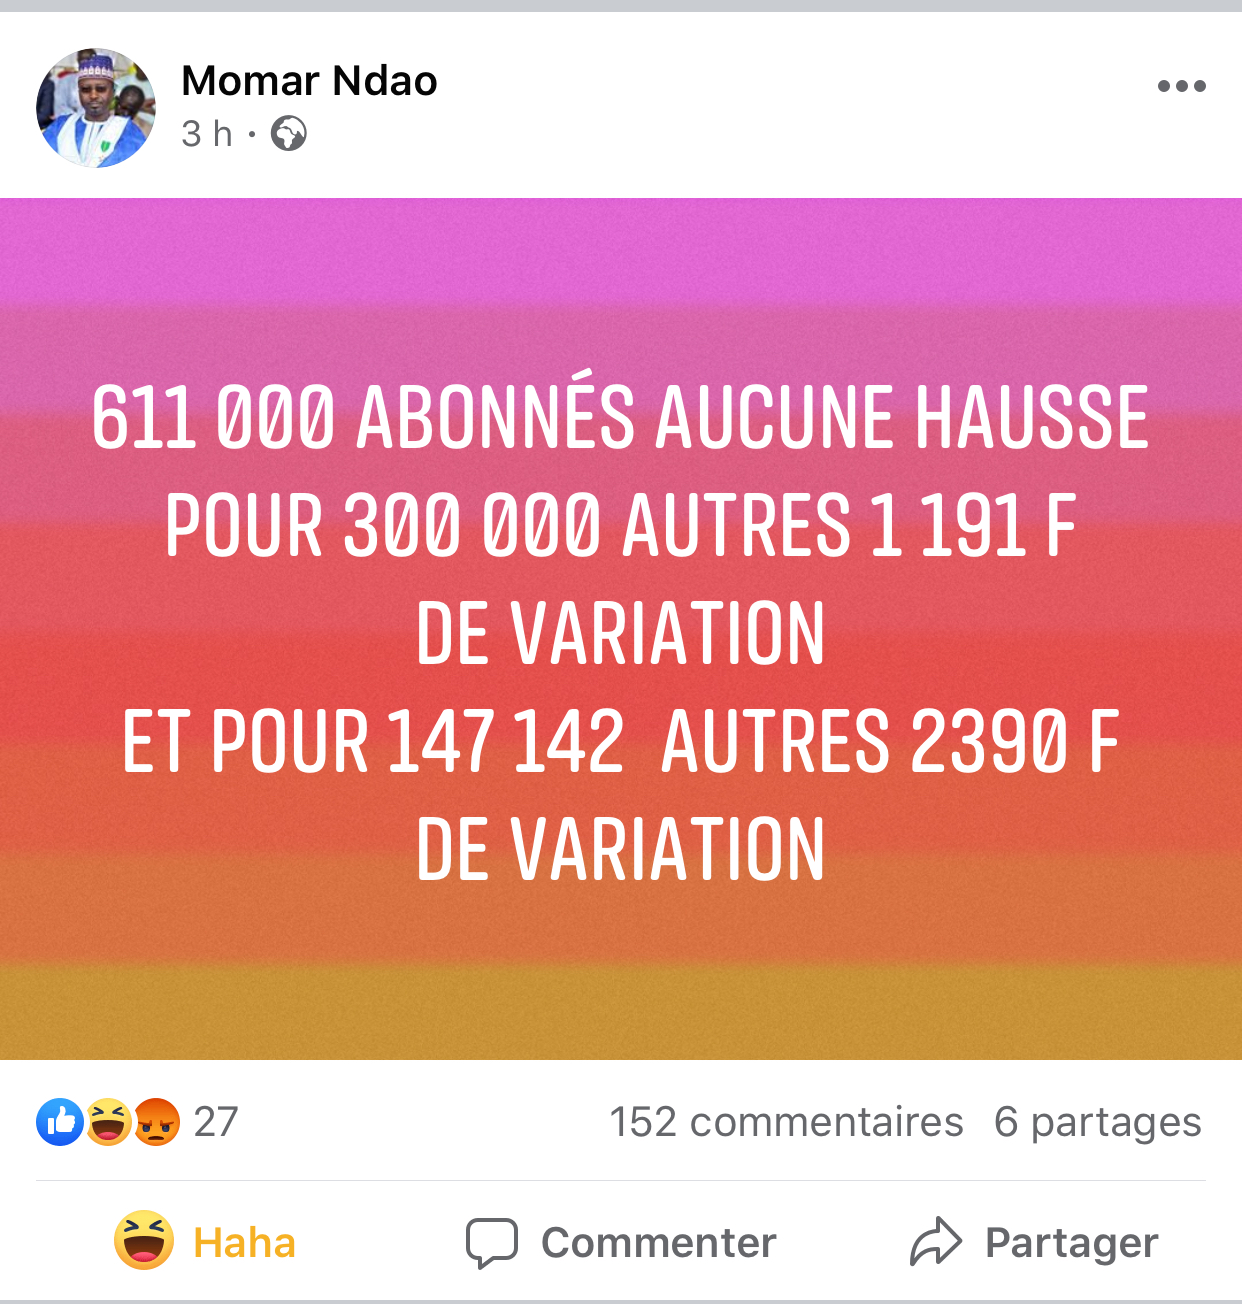 Facebook: Momar Ndao défend la hausse du prix de l'électricité, reçoit plus d'une centaine d'injures et nettoie les commentaires de son post